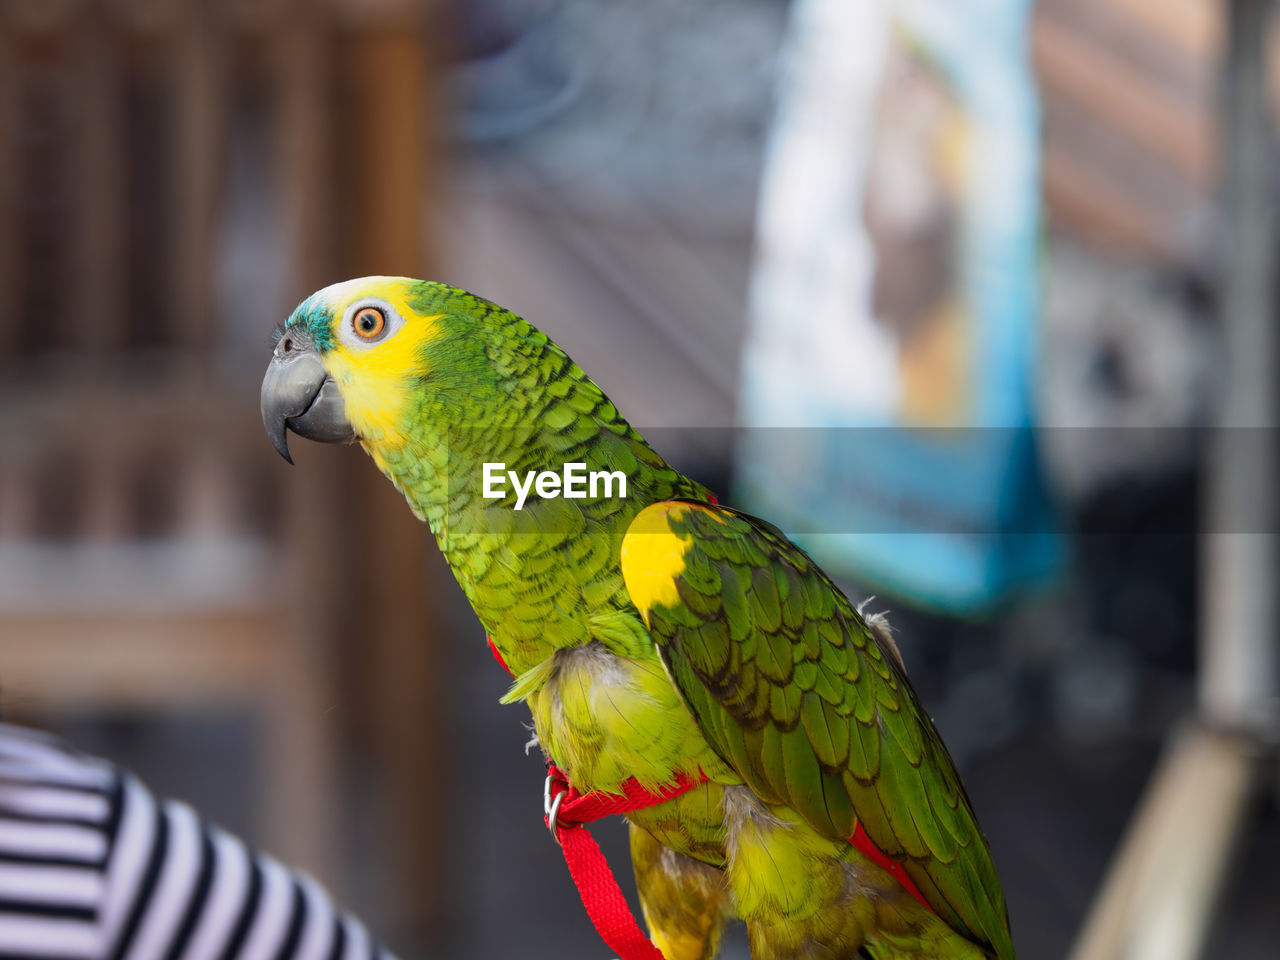 Portrait of a parrot